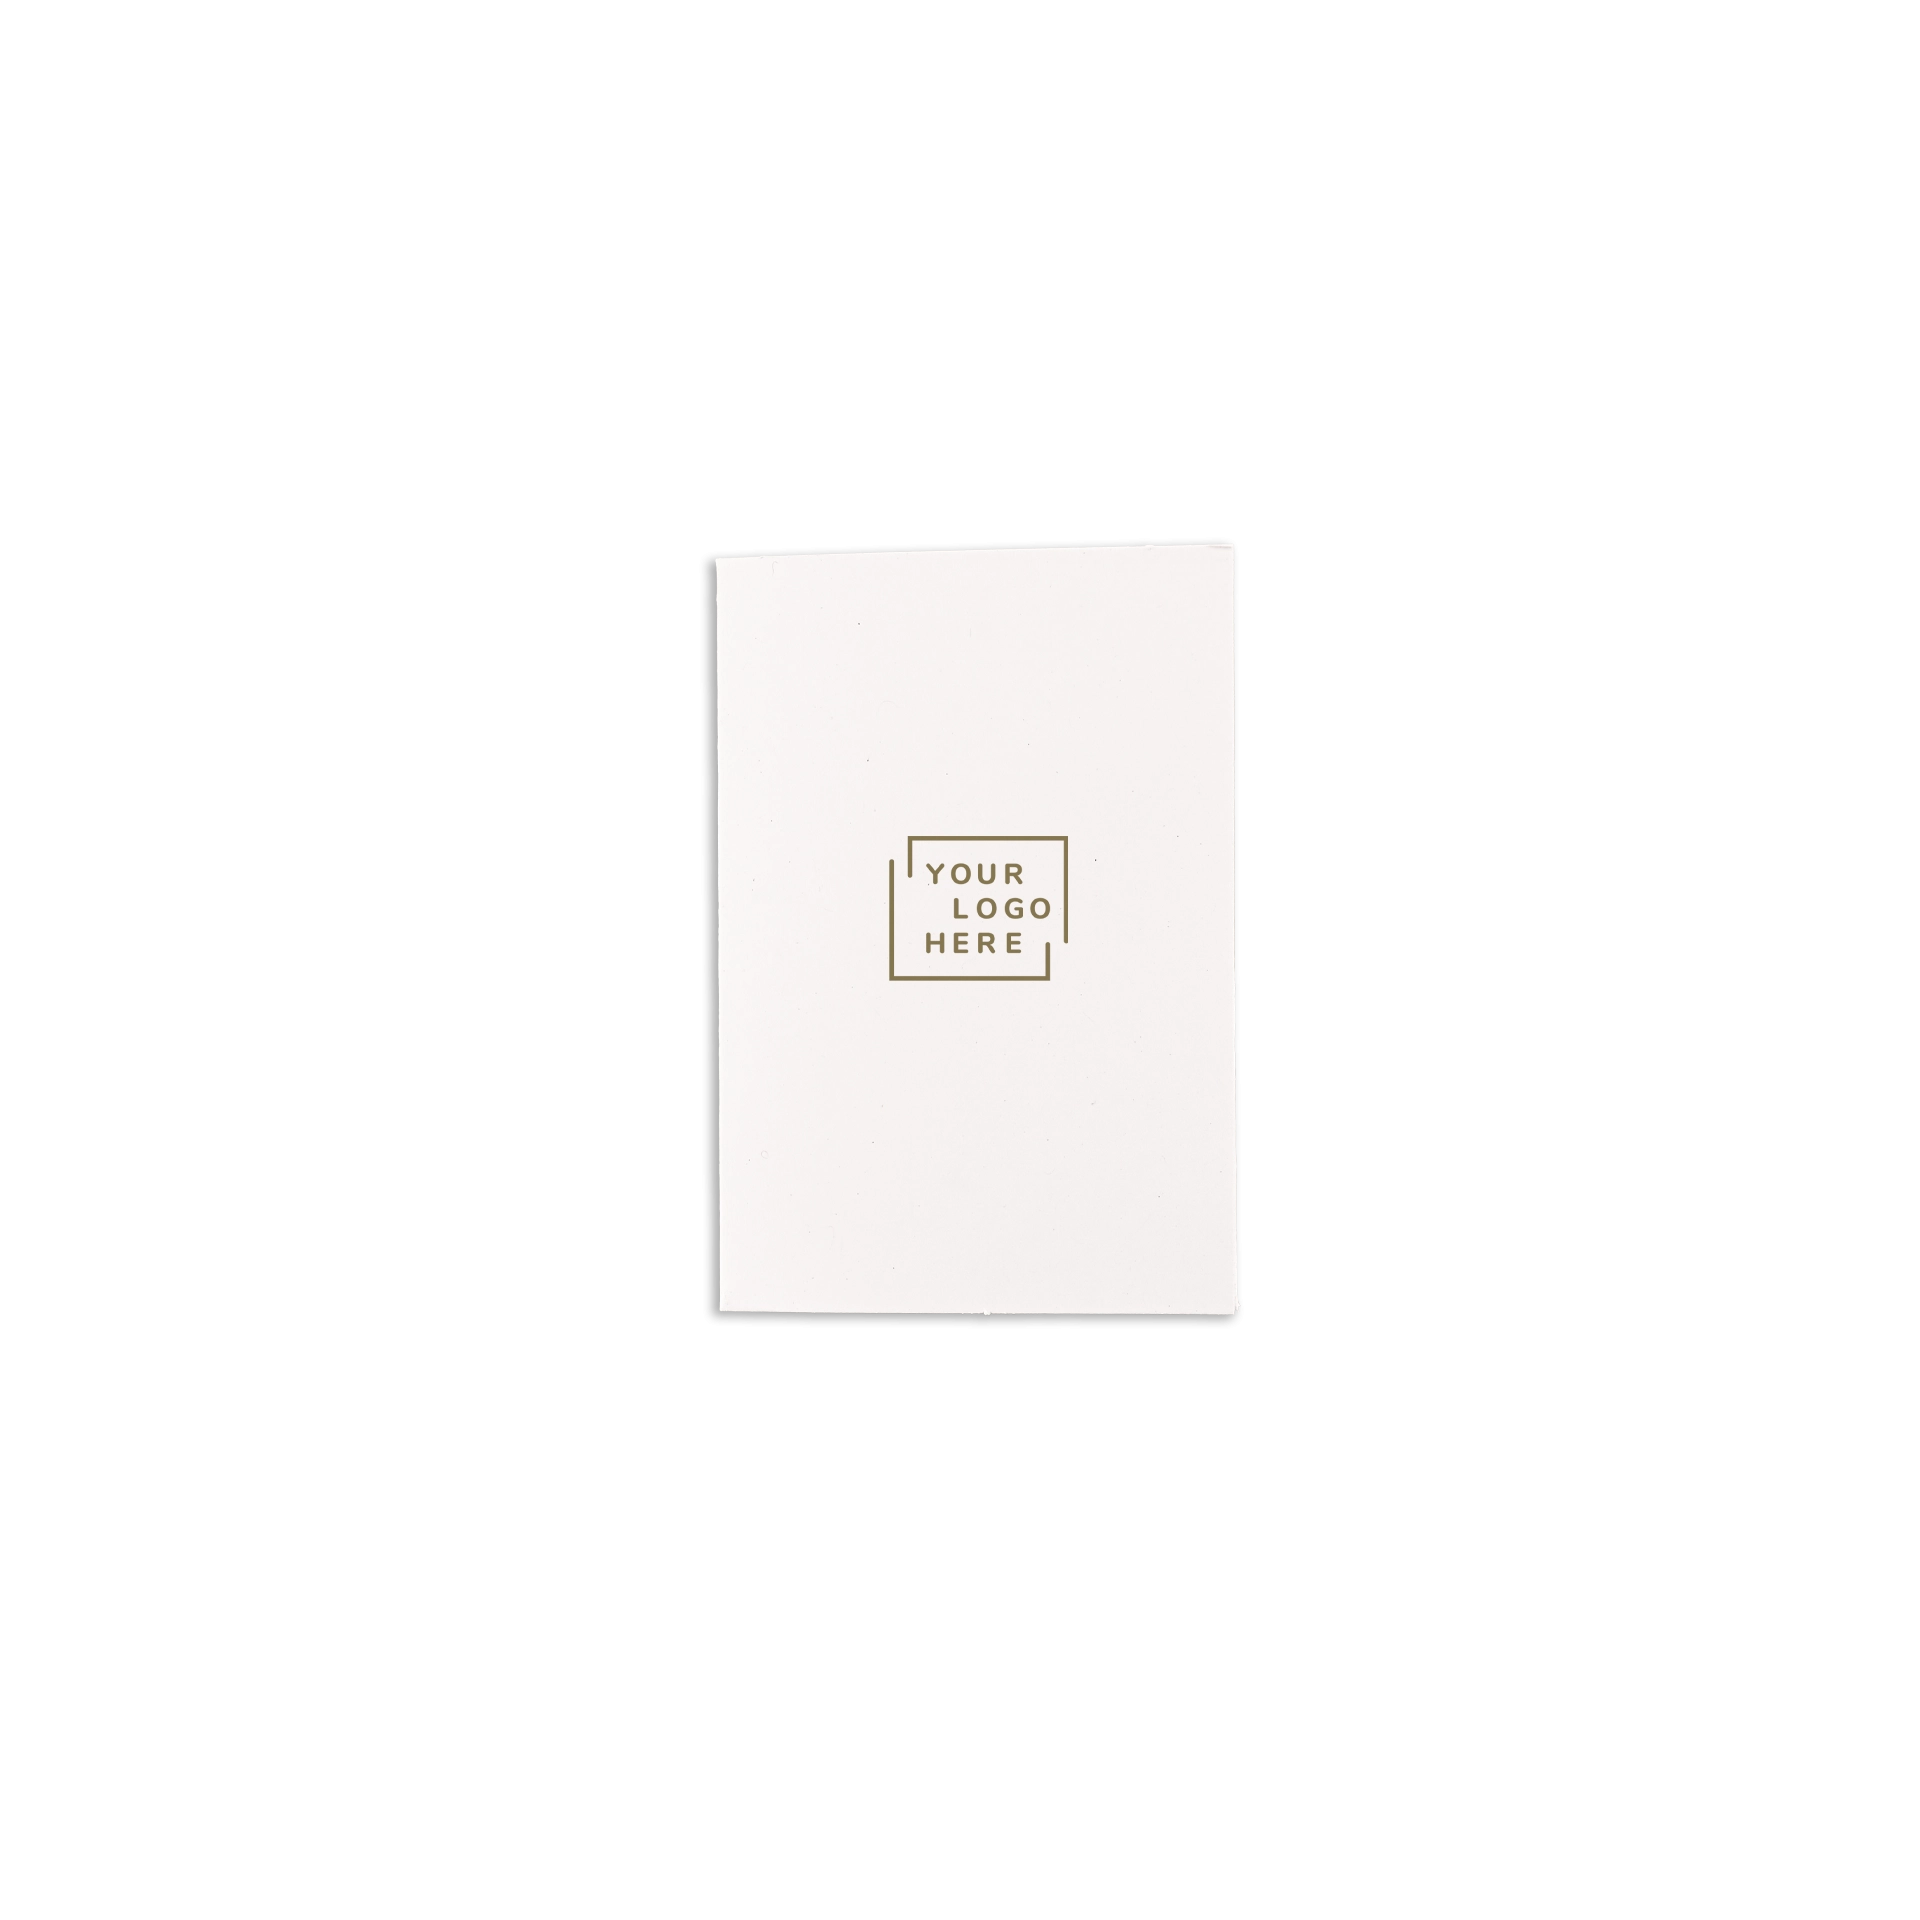 Astuccio keycard D1 7,5x10 cm carta patinata oppure Usomano 4/4 colore stampa digitale